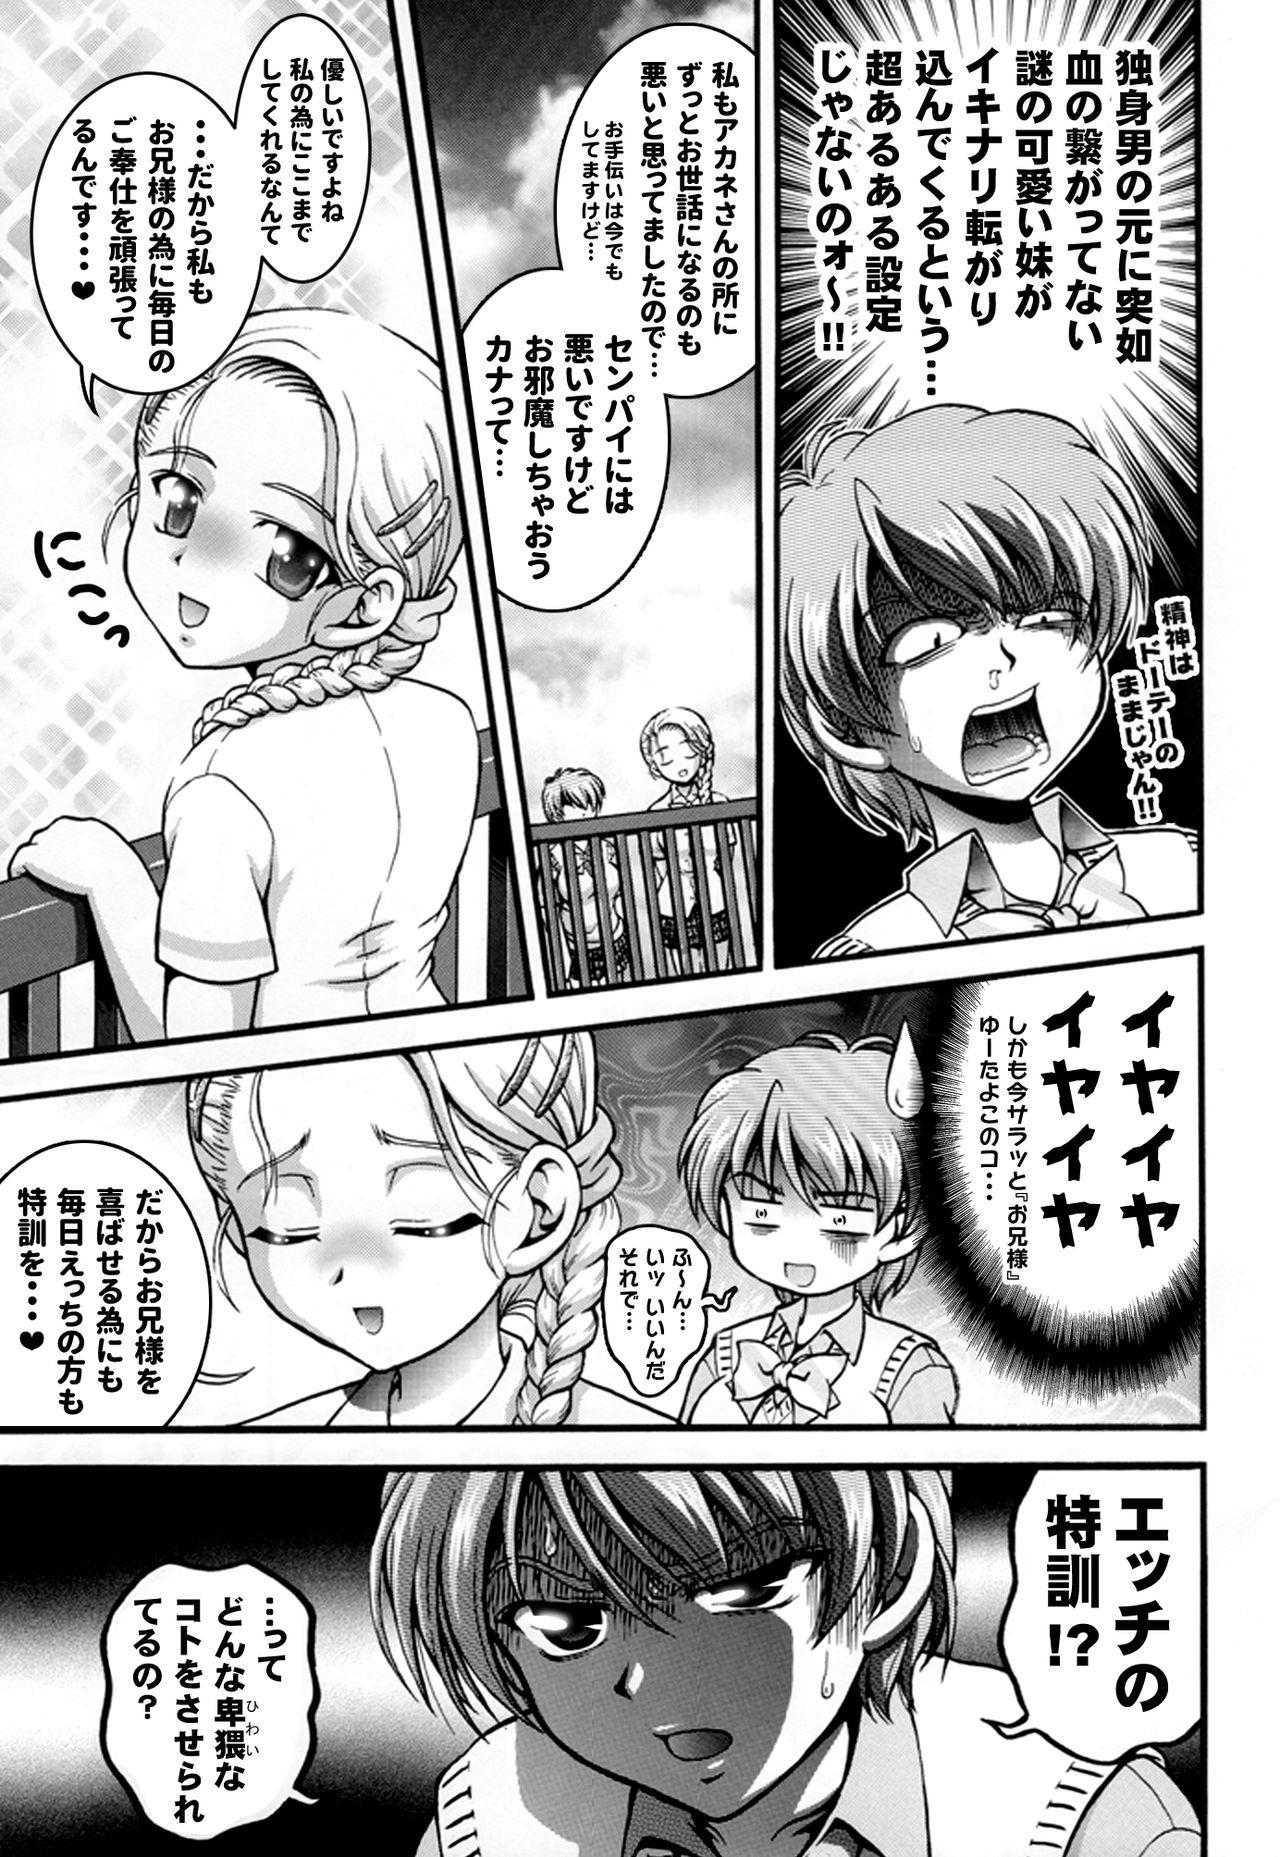 Hot Girl Milk Hunters 5+6+7+α - Futari wa pretty cure Culote - Page 12